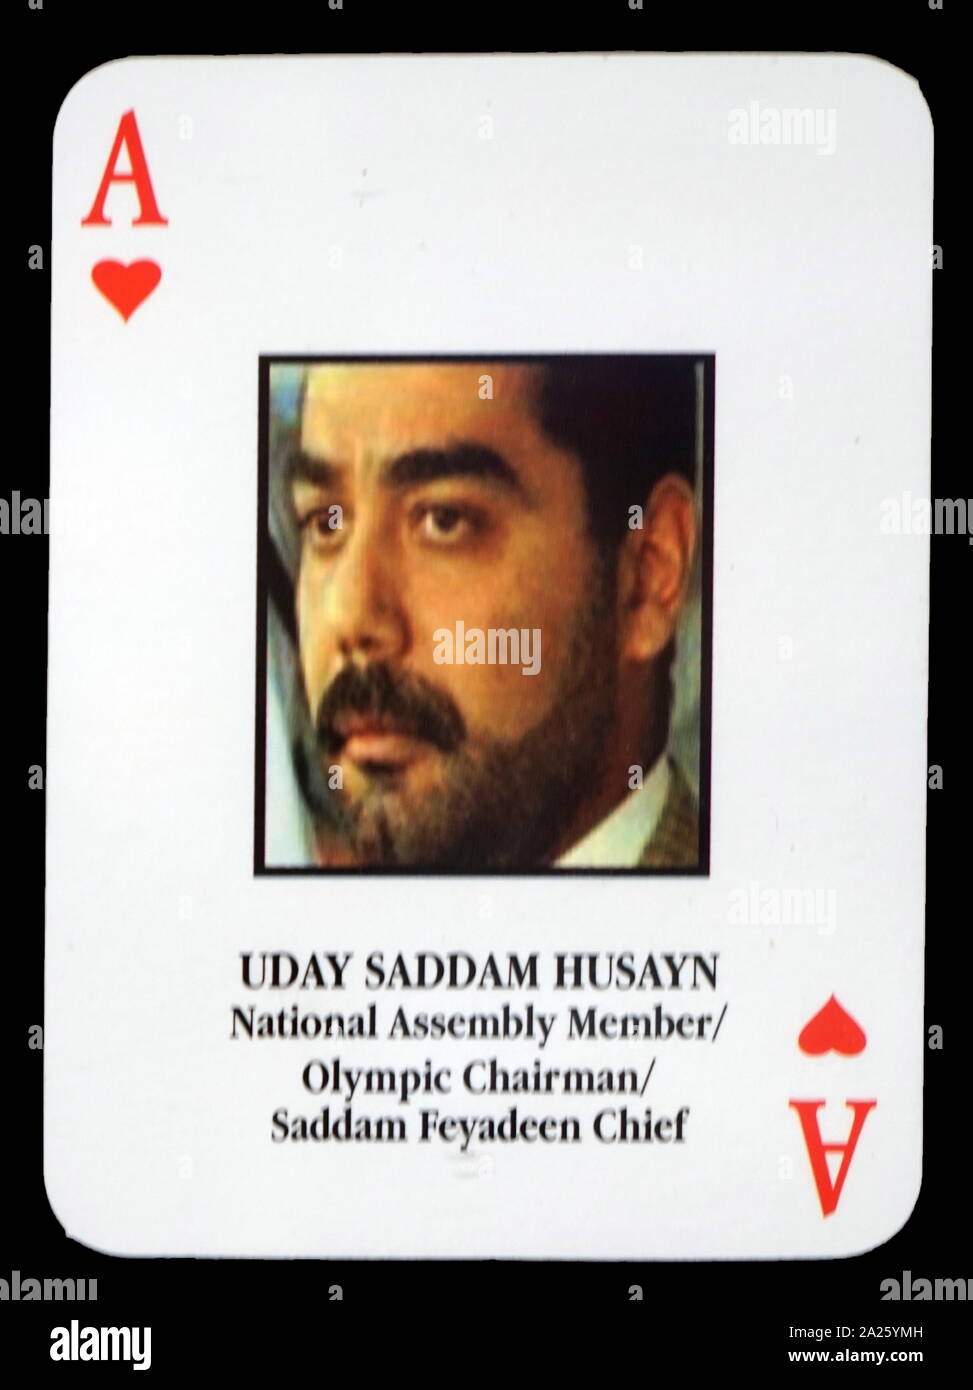 La plupart des Iraquiens, voulait jouer aux cartes - Uday Saddam Husayn (membre de l'Assemblée Nationale Olympique/Président/Chef Feyadeen Saddam). L'armée américaine a mis au point un ensemble de cartes à jouer pour aider les pays fournisseurs d'identifier les plus-voulait que les membres du gouvernement du Président Saddam Hussein lors de l'invasion de l'Irak en 2003. Banque D'Images